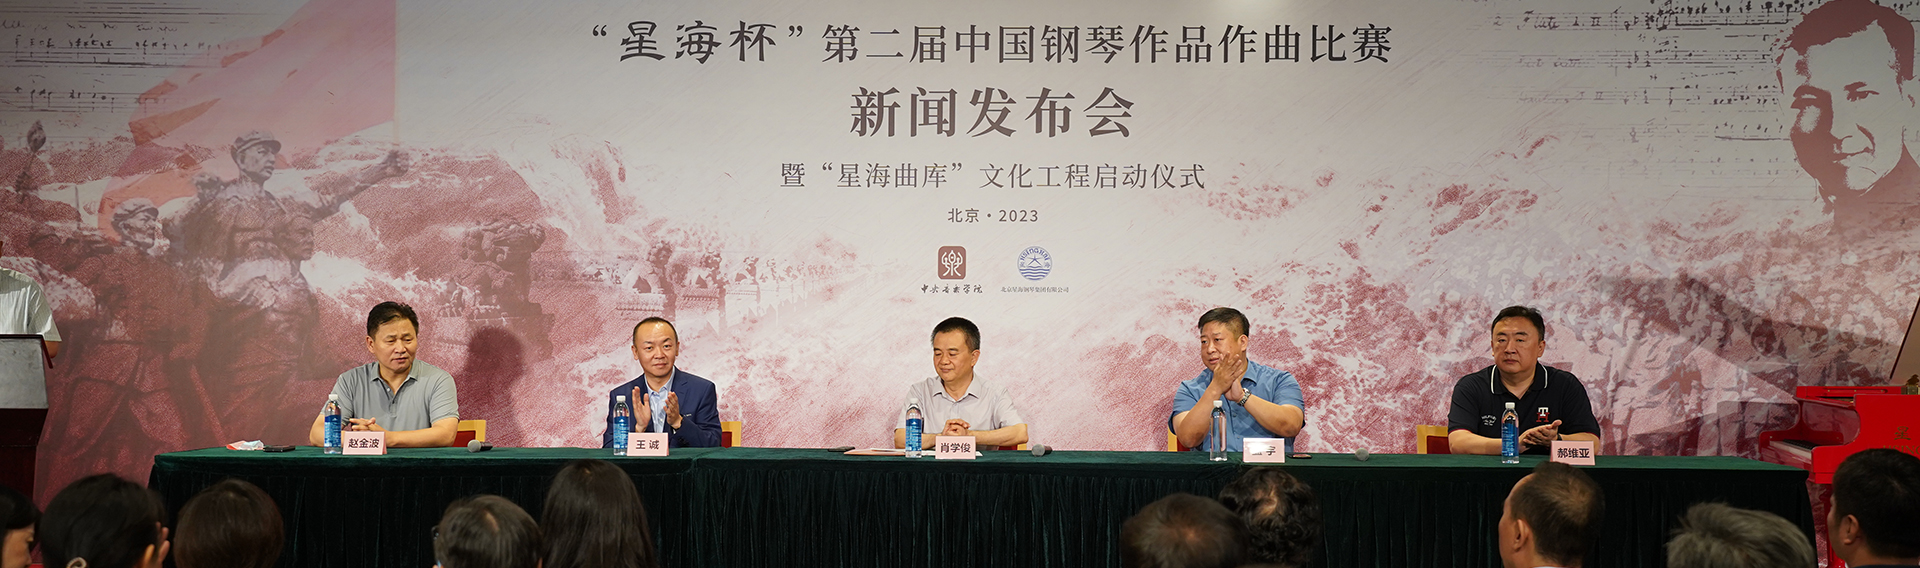 “星海杯”第二屆中國鋼琴作品作曲比賽新聞發布會暨“星海曲庫”文化工程啟動儀式在國家大劇院隆重舉行